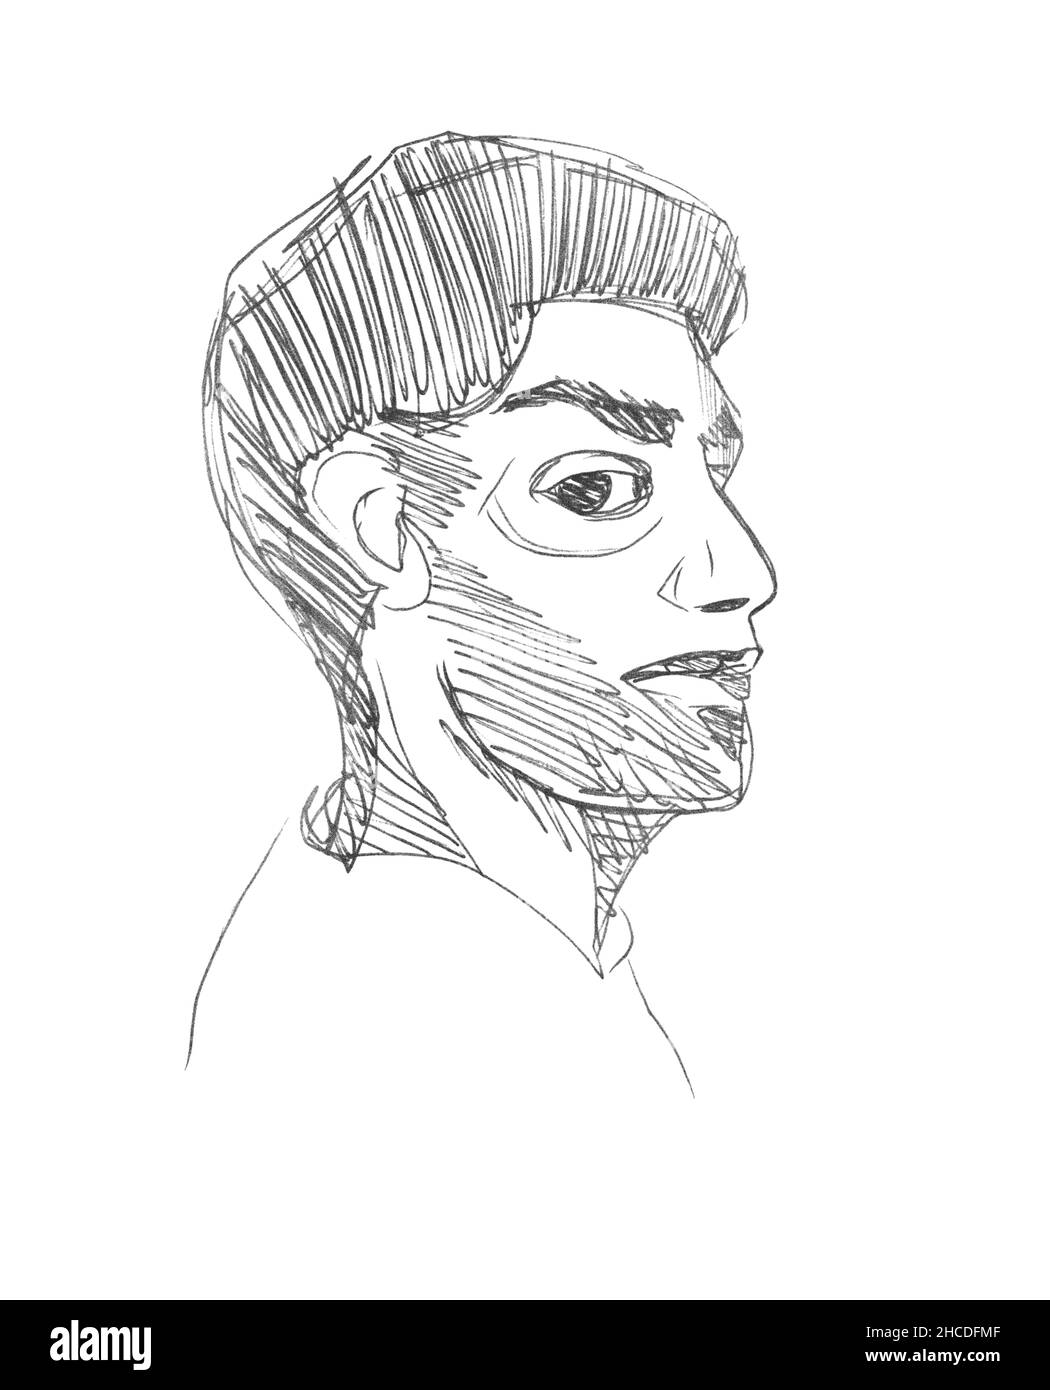 Vektorlinie Skizze eines Halbdrehs Gesicht eines erwachsenen Mannes aus dem Nahen Osten mit einem Bart auf seinem Gesicht. Pen-Zeichnung Porträt auf weißem Papier. Linearer Freihandgriff Stock Vektor